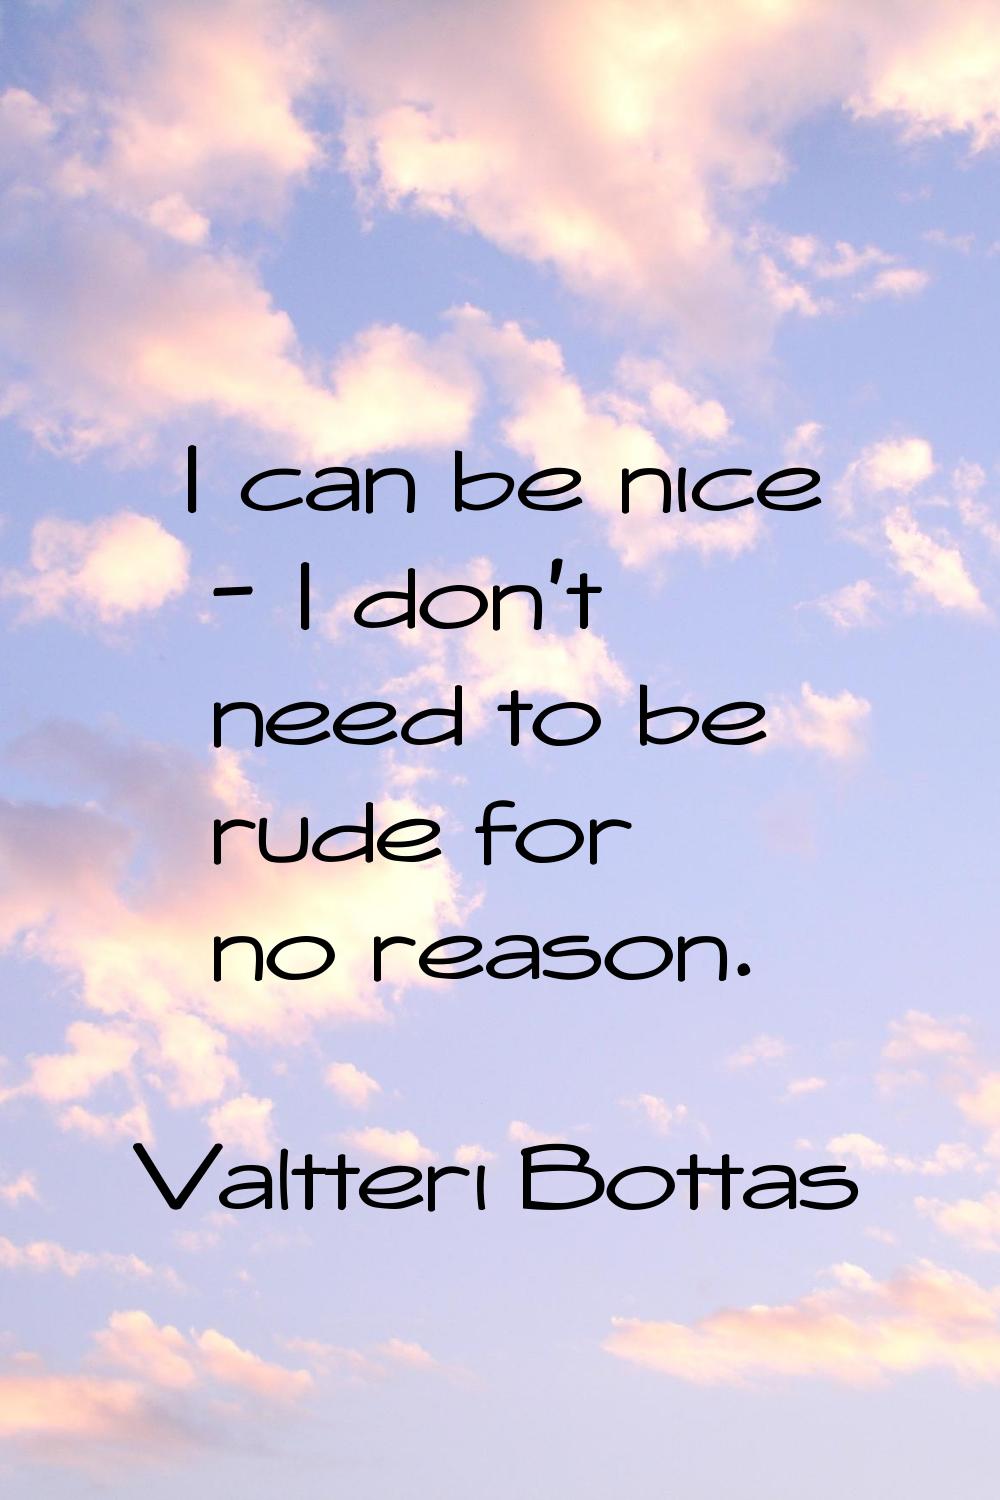 I can be nice - I don't need to be rude for no reason.